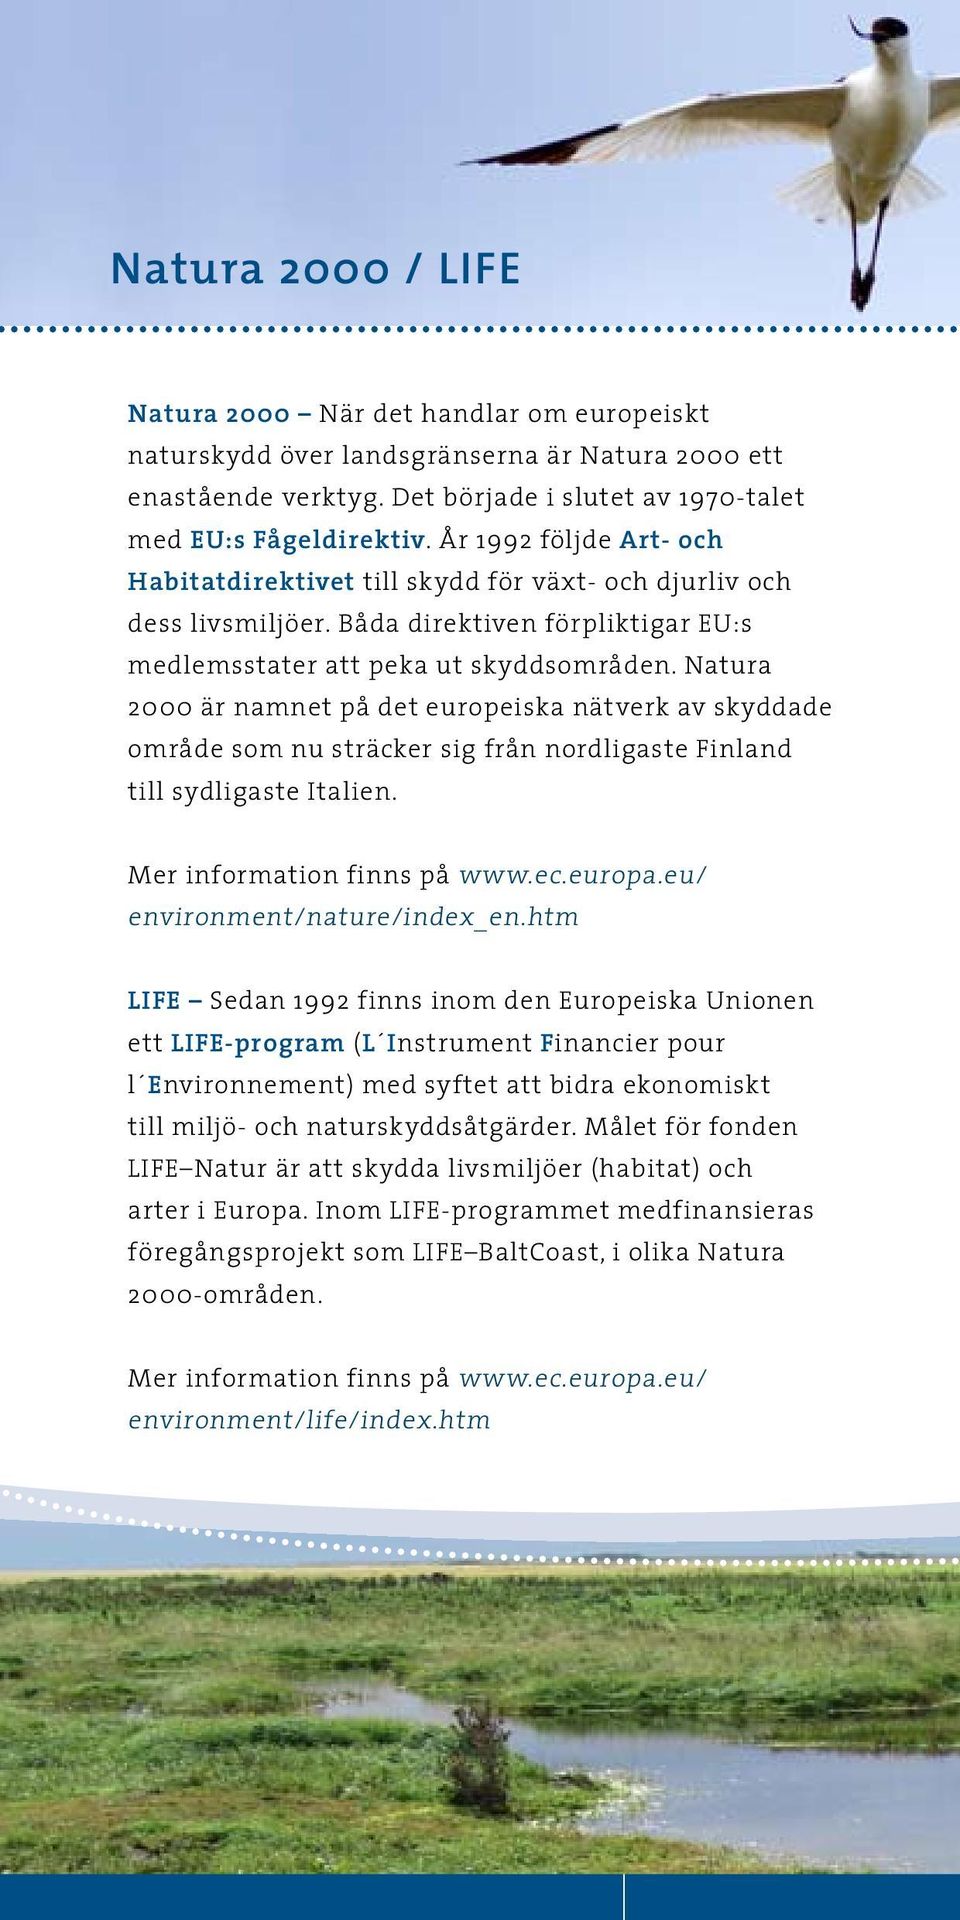 Natura 2000 är namnet på det europeiska nätverk av skyddade område som nu sträcker sig från nordligaste Finland till sydligaste Italien. Mer information finns på www.ec.europa.